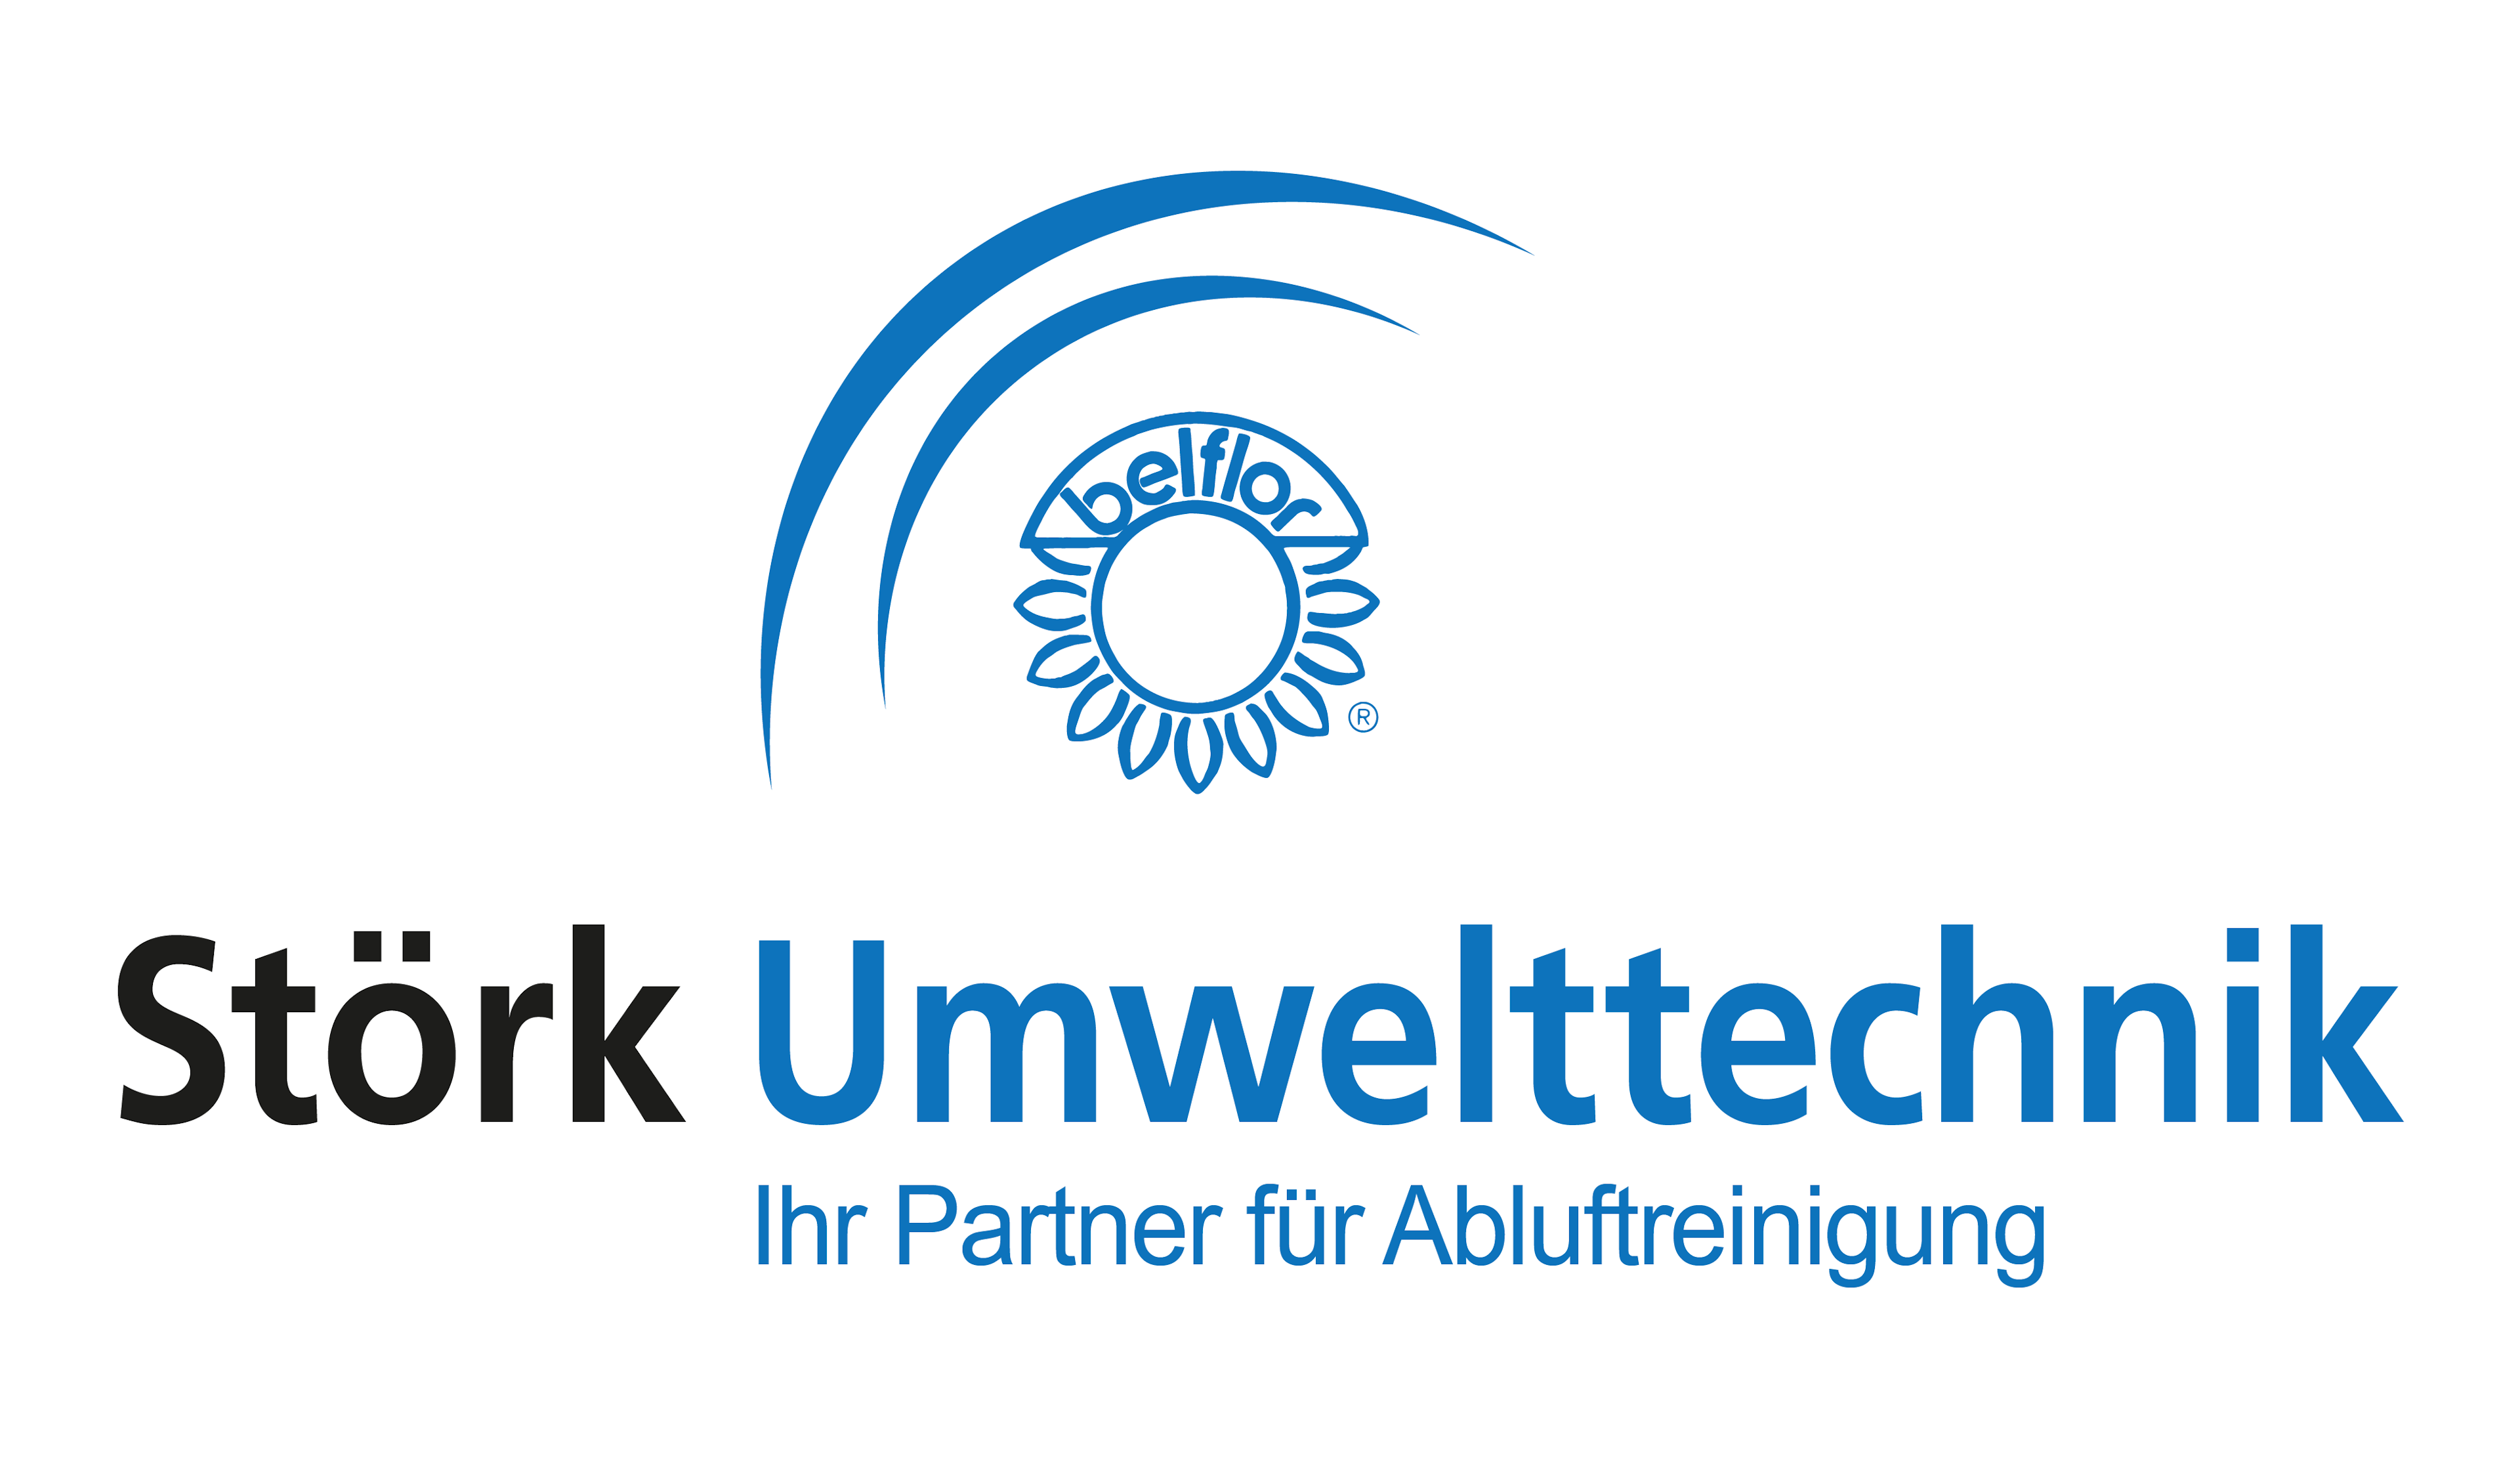 Störk Umwelttechnik GmbH